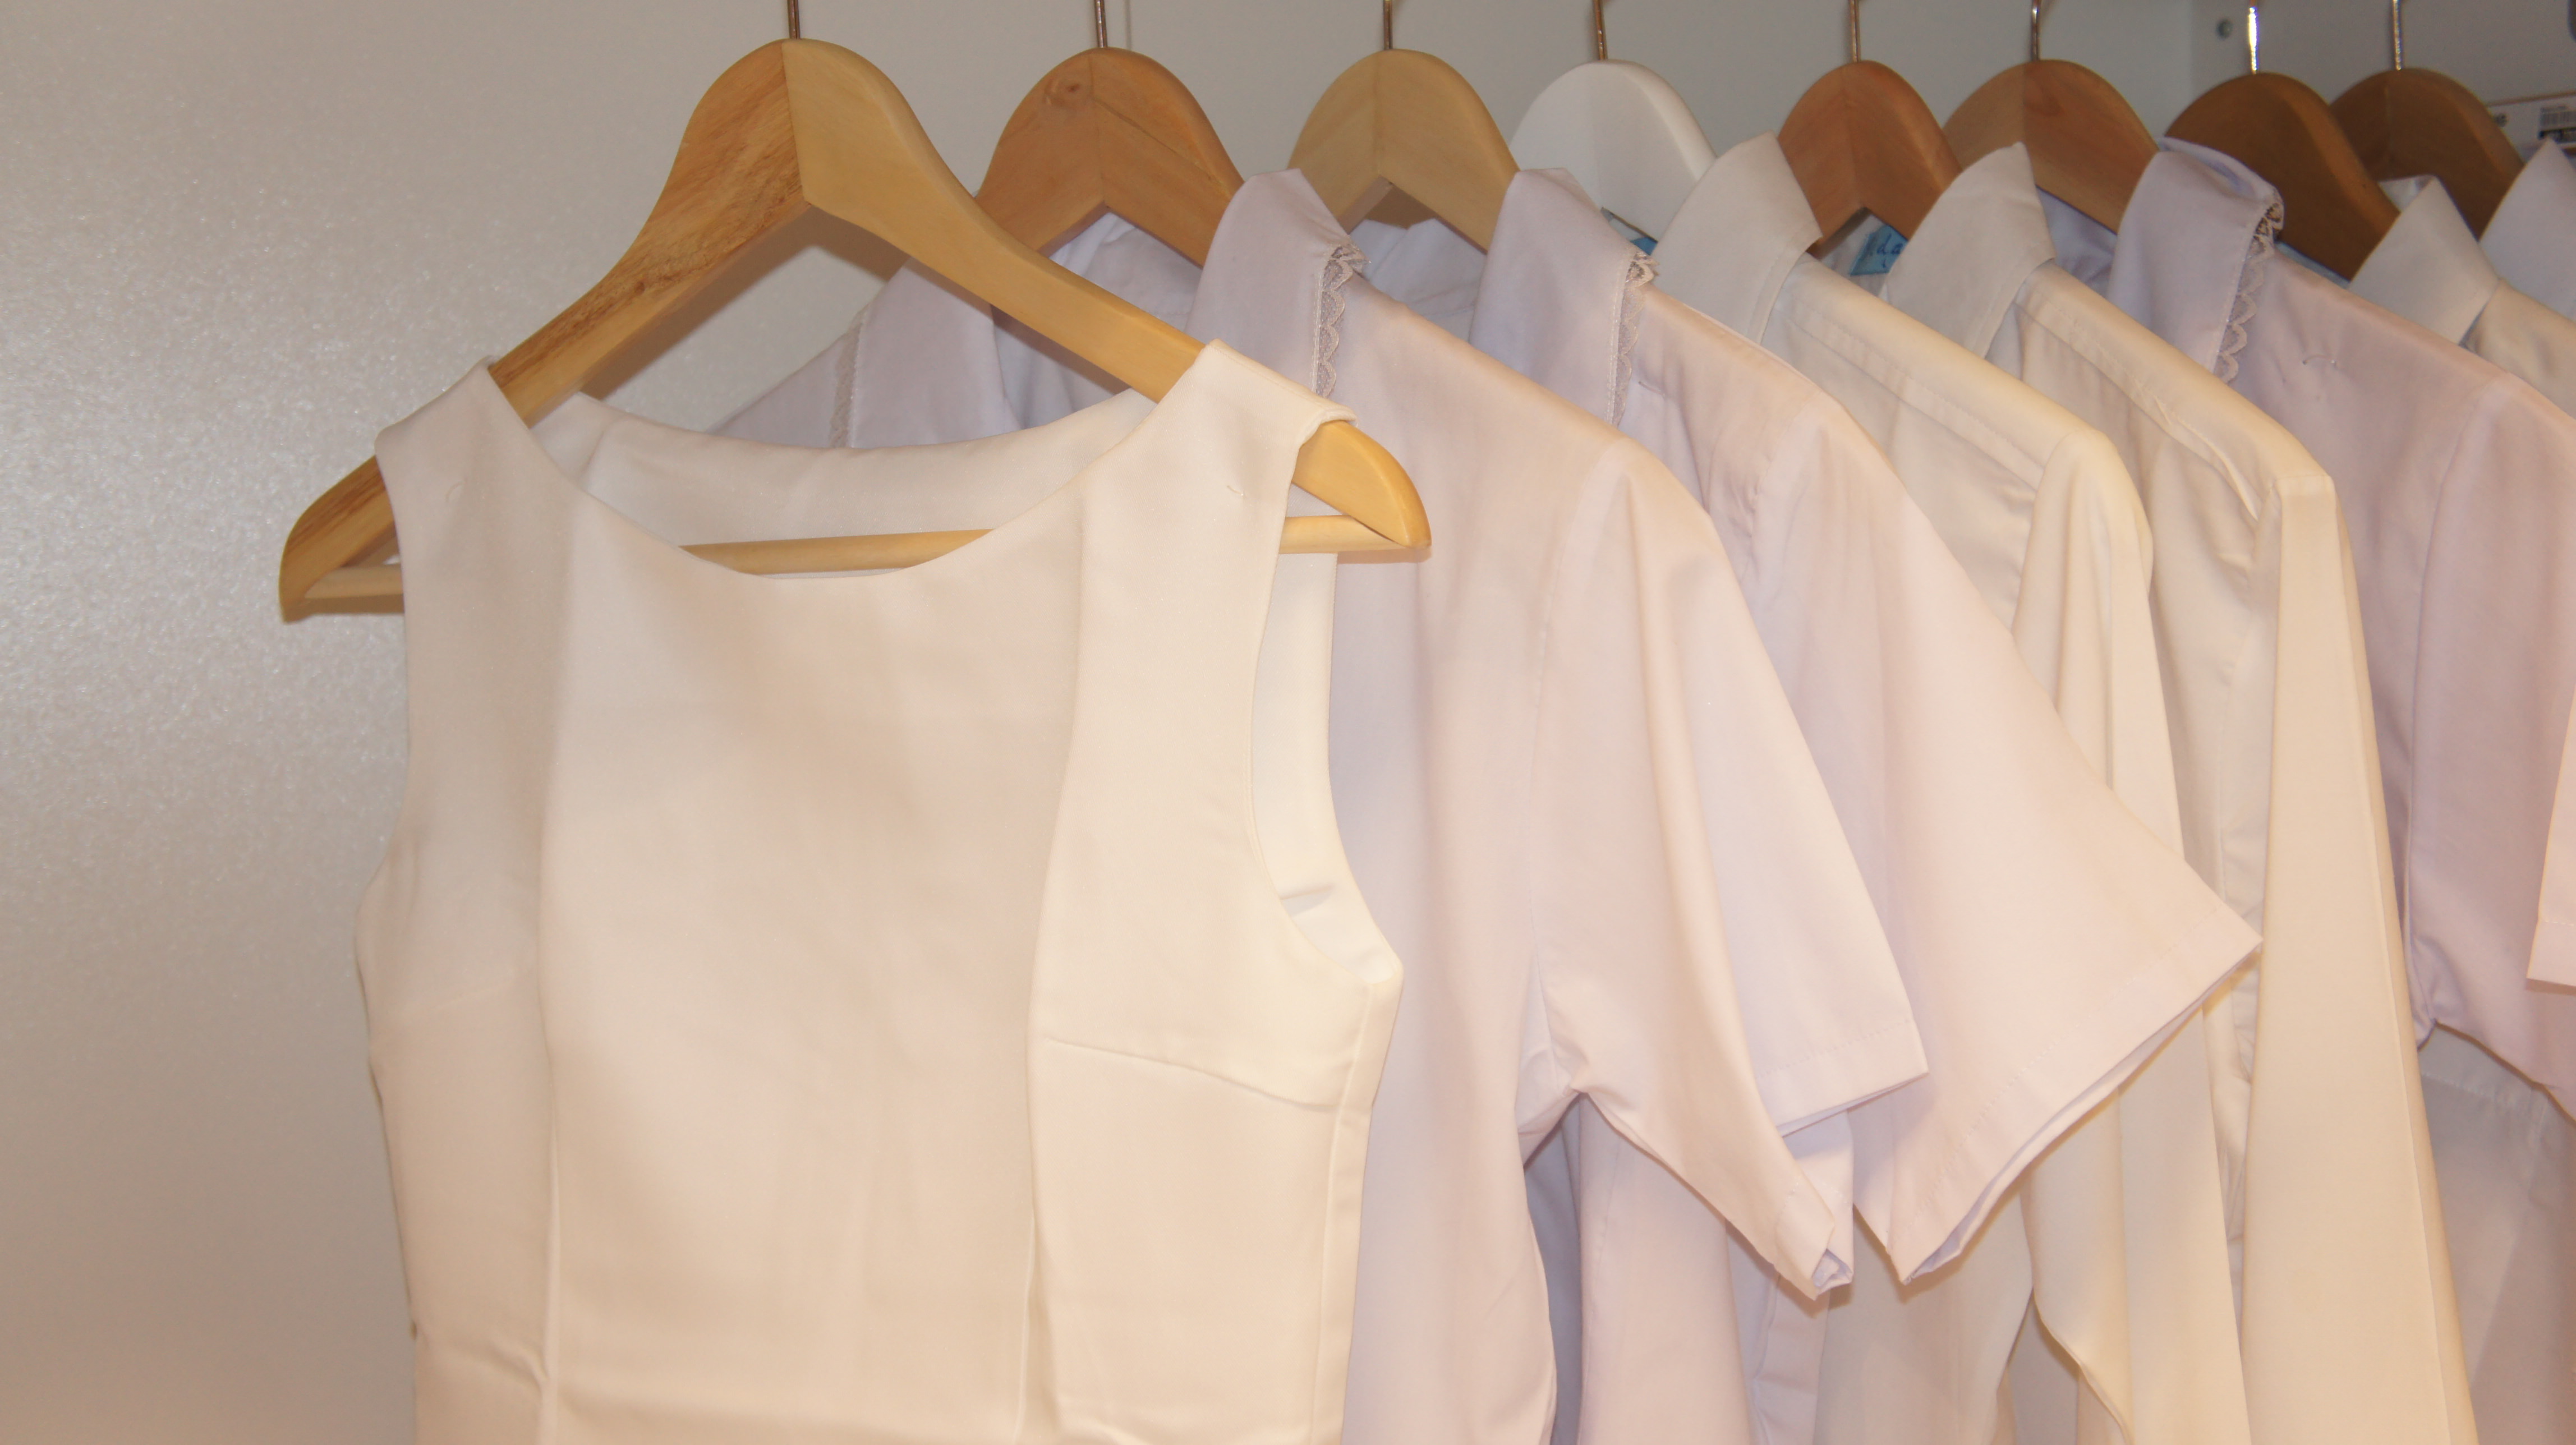 roupas brancas são tradição no ano-novo, mas você pode escolher outras cores